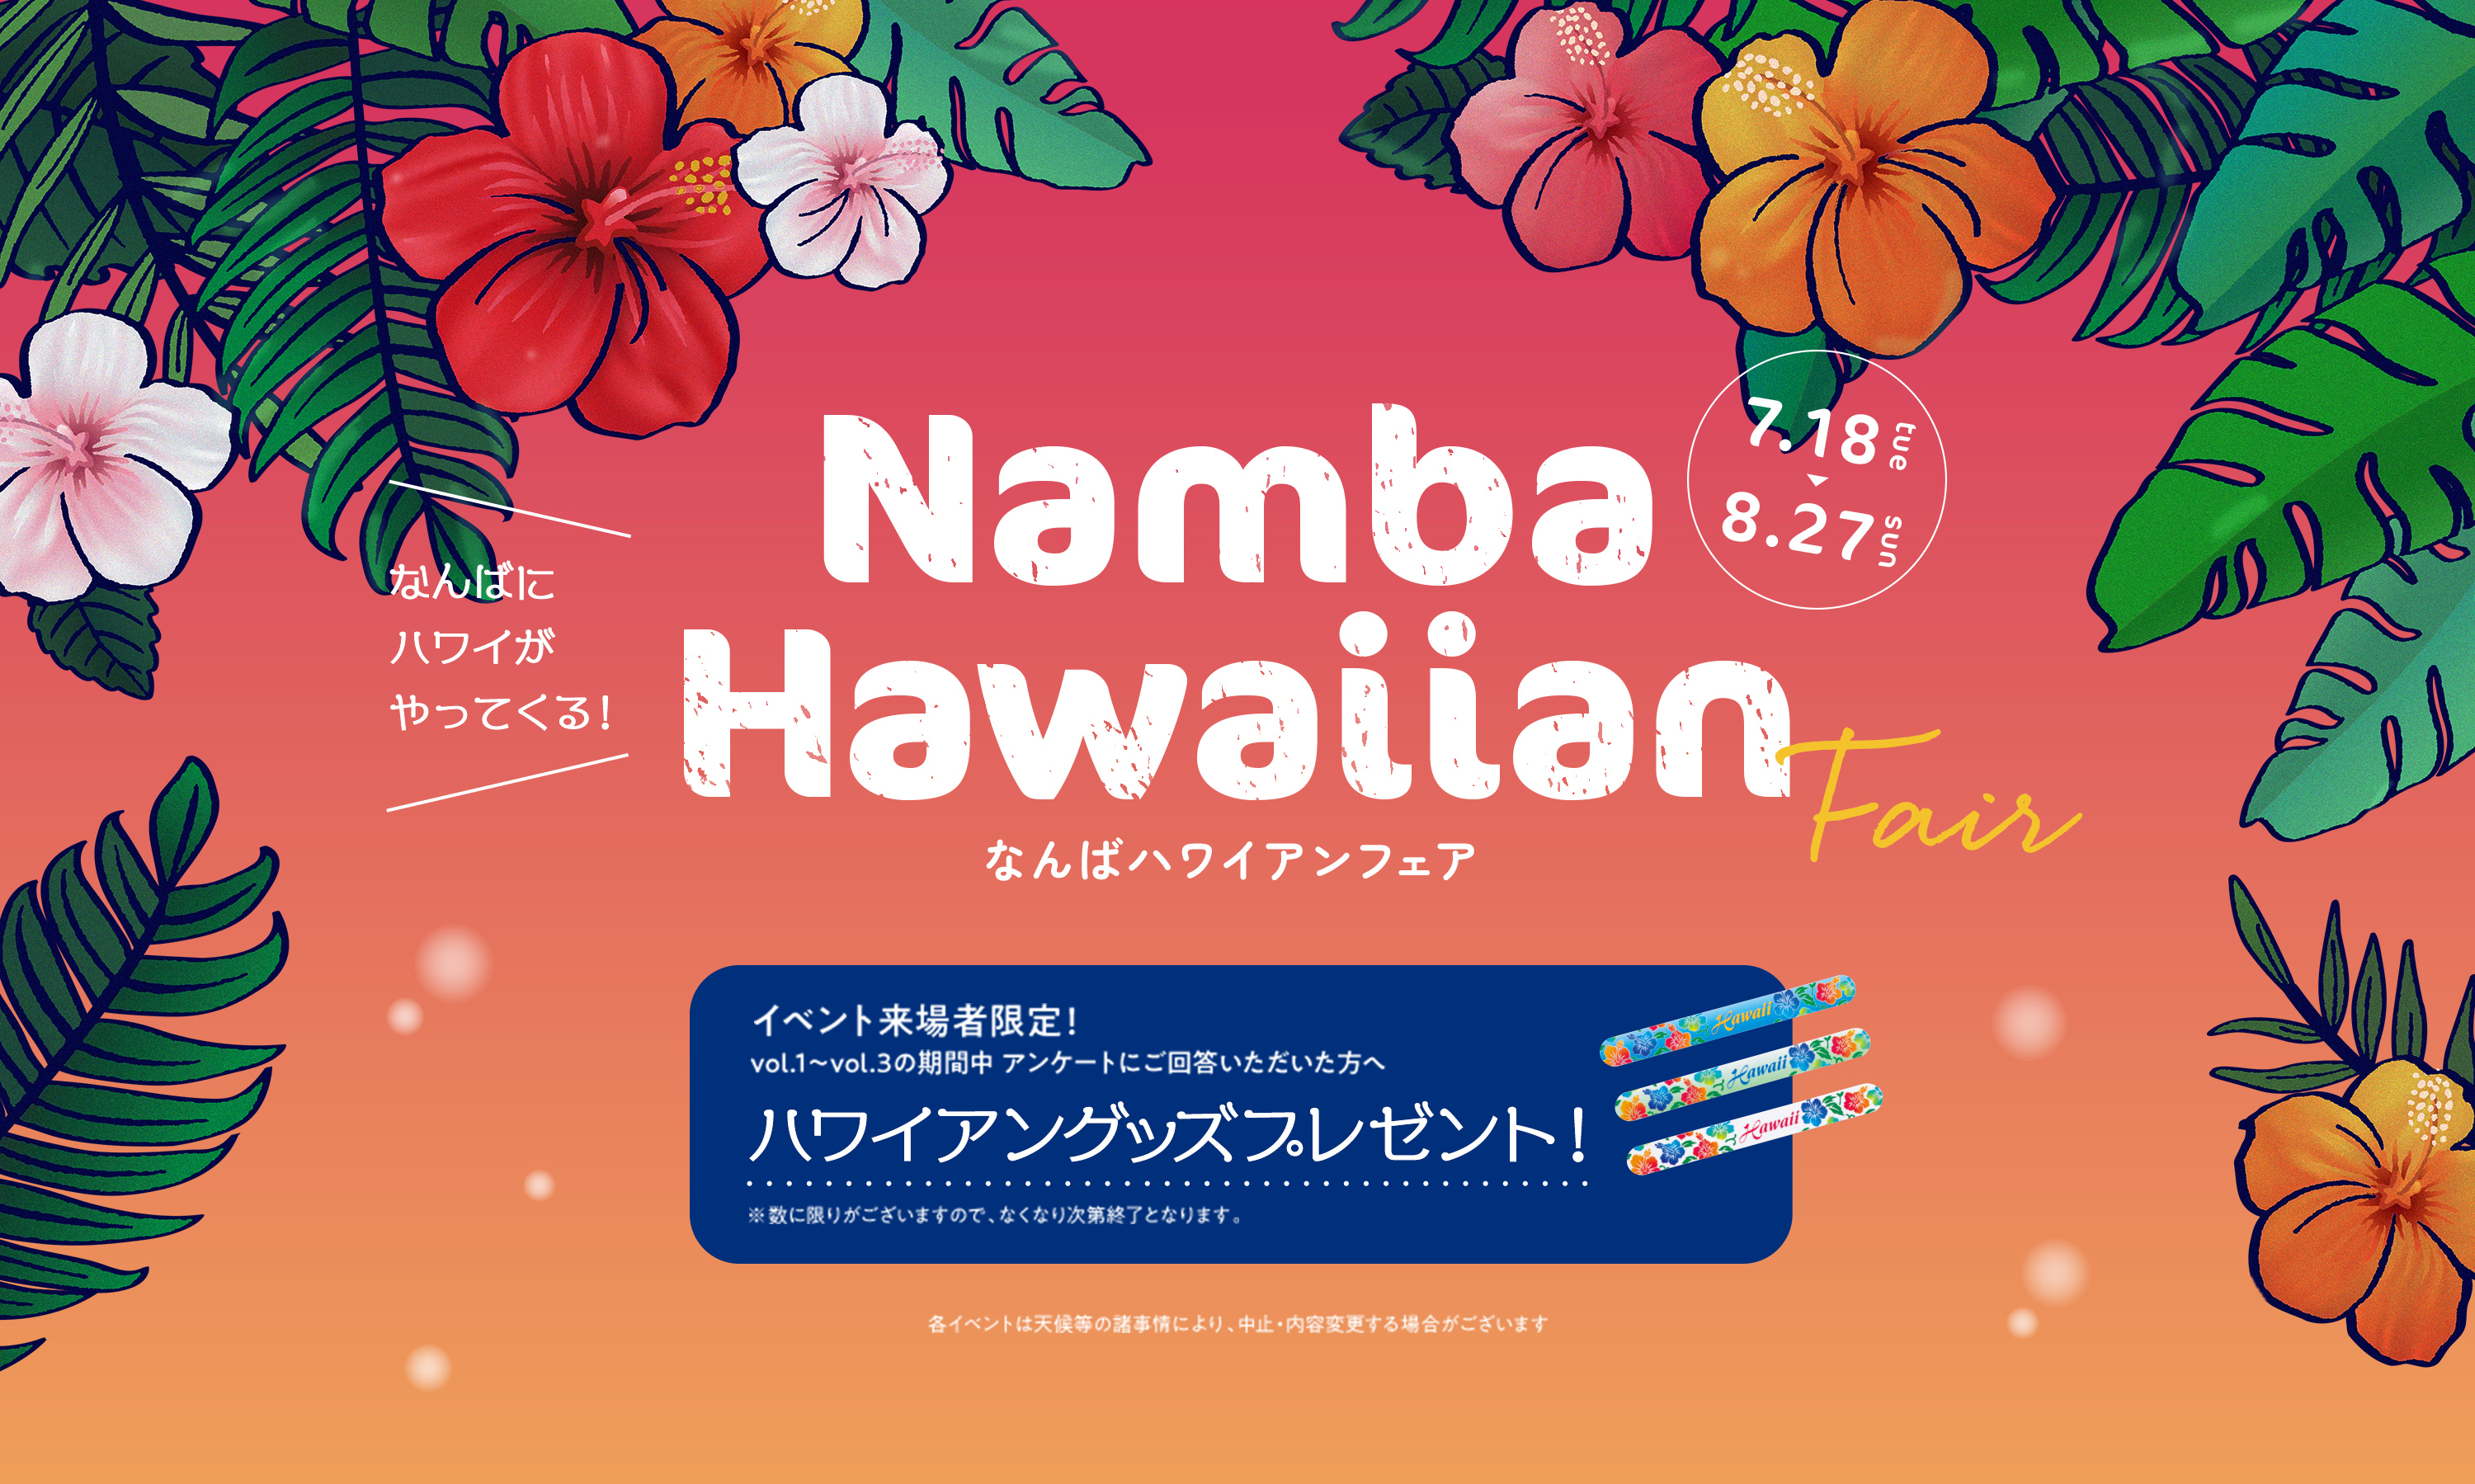 Namba Hawaiian Fair なんば ハワイアンフェア 7.18tue 8.27sun 来場者限定！vol.1〜vol.3の期間中 アンケートにご回答いただいた方へ ハワイアングッズプレゼント！